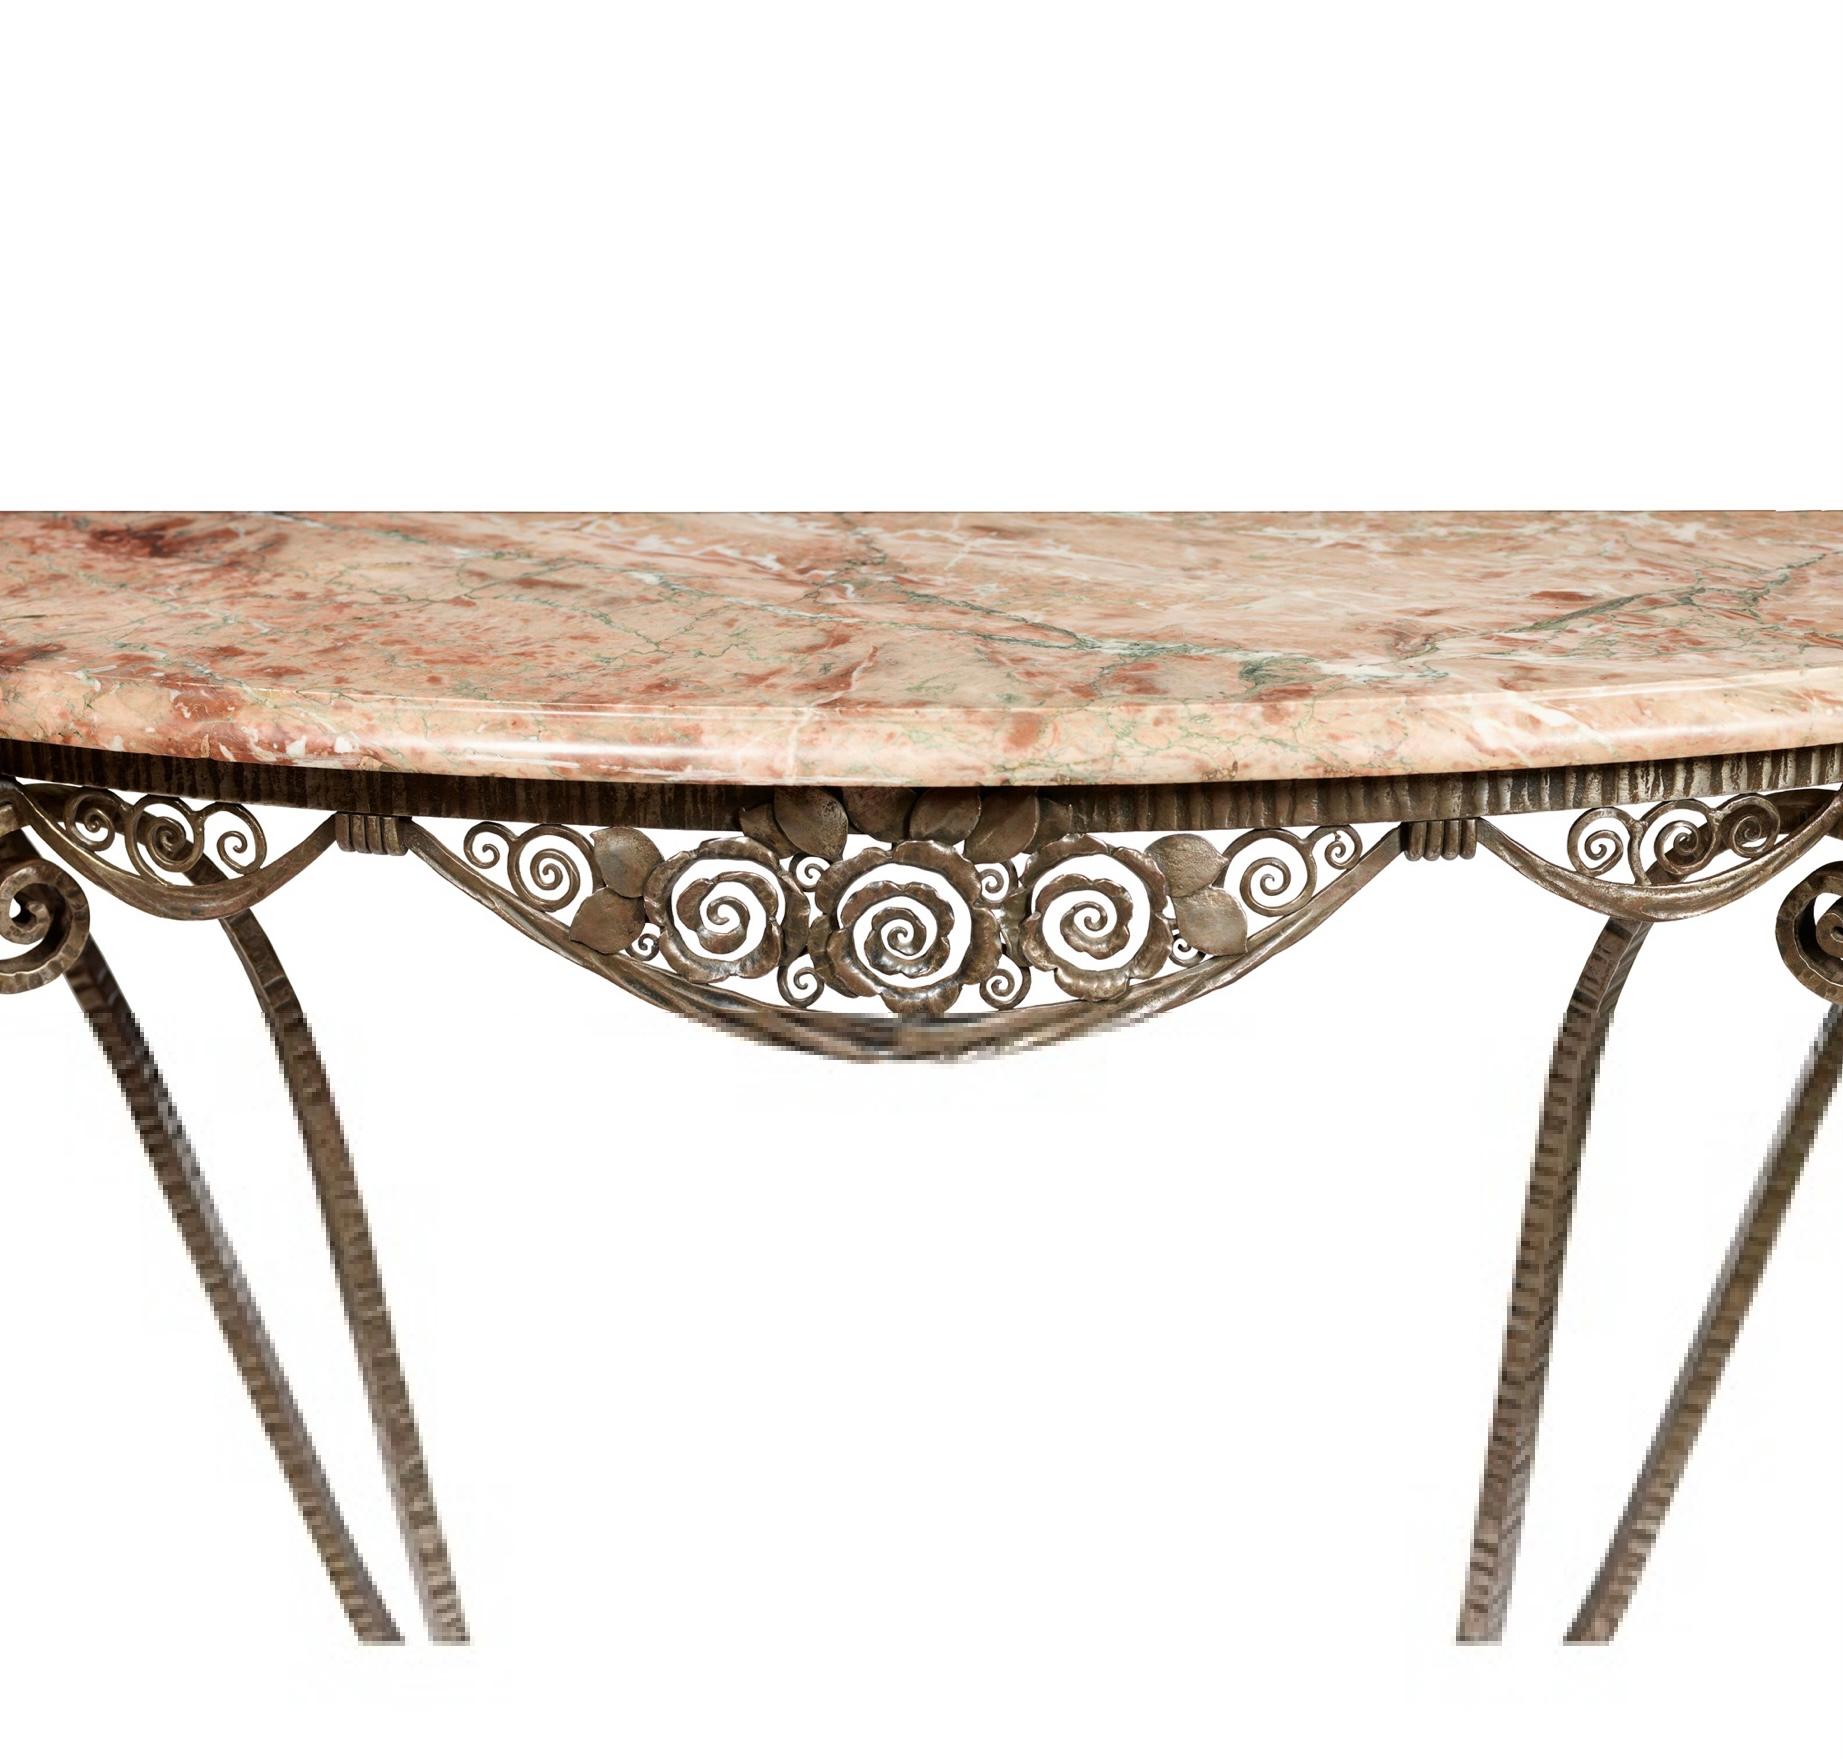 Table console ''Simplicité'' par Edgar Brandt (1880-1960) 
vers 1925
acier forgé, plateau en marbre
Dimensions : 150.5cm de large, 87.5cm de haut, 45.5cm de profondeur